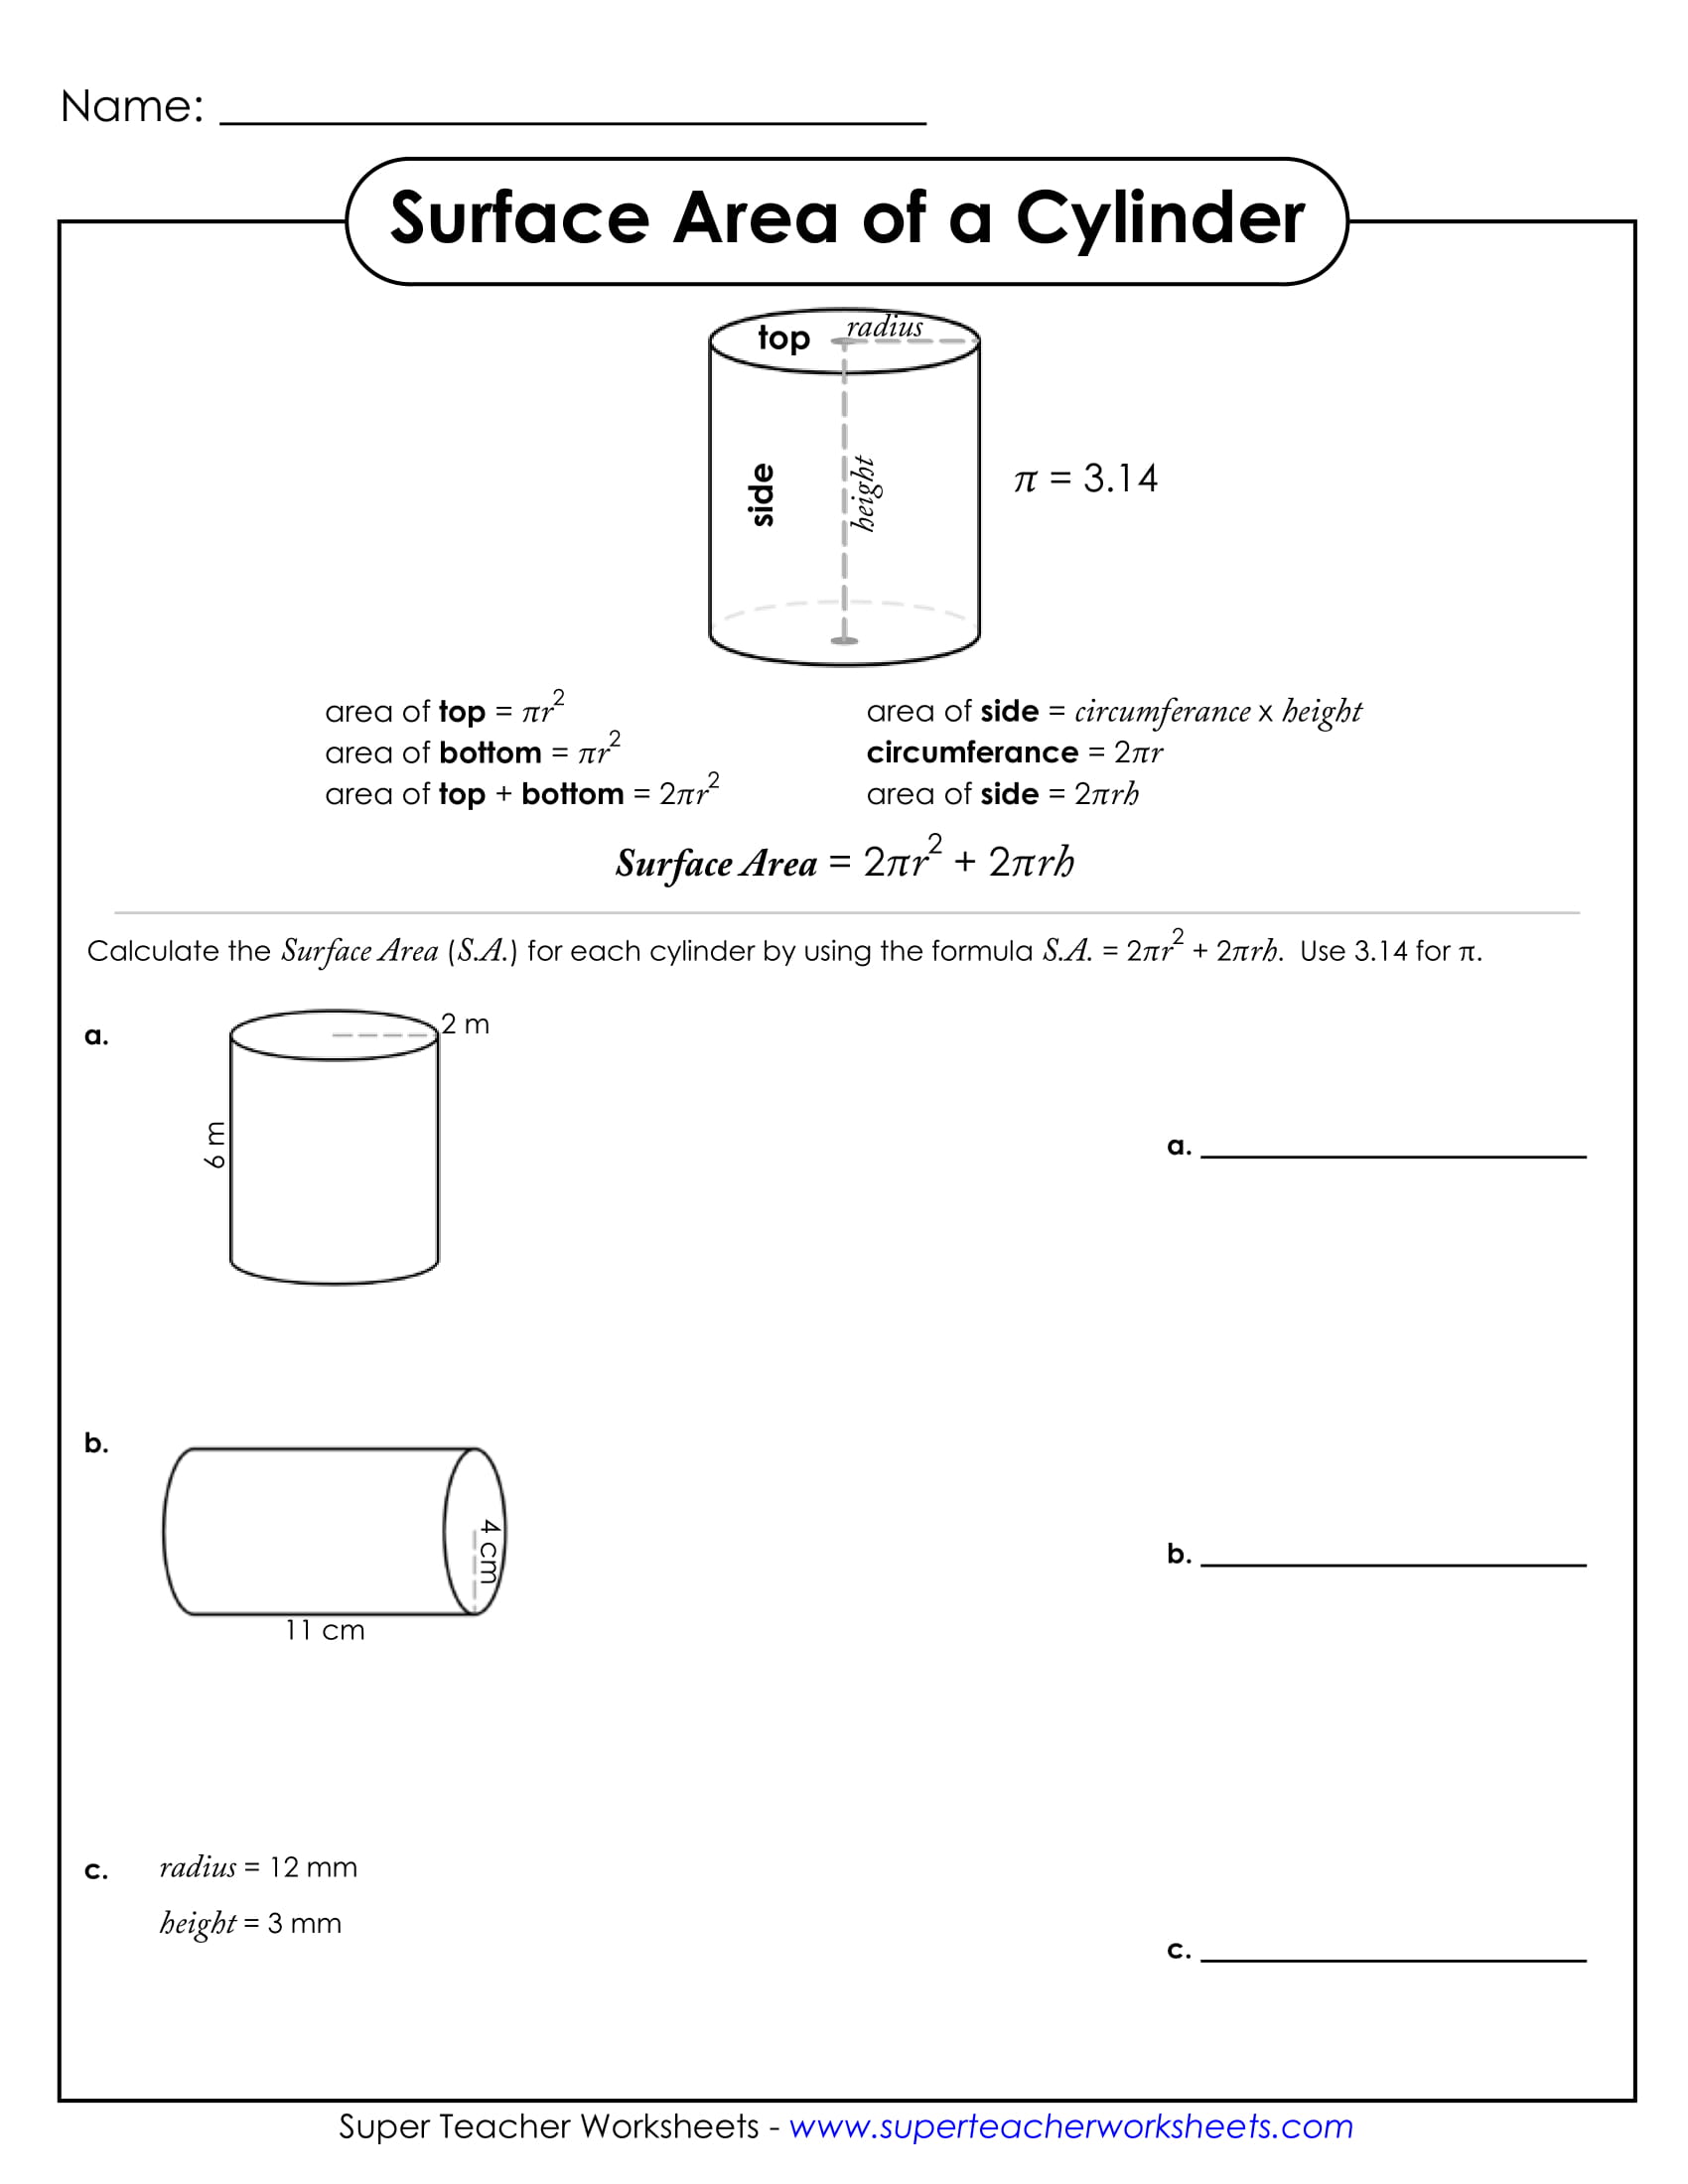 volume-of-a-cylinder-practice-worksheet